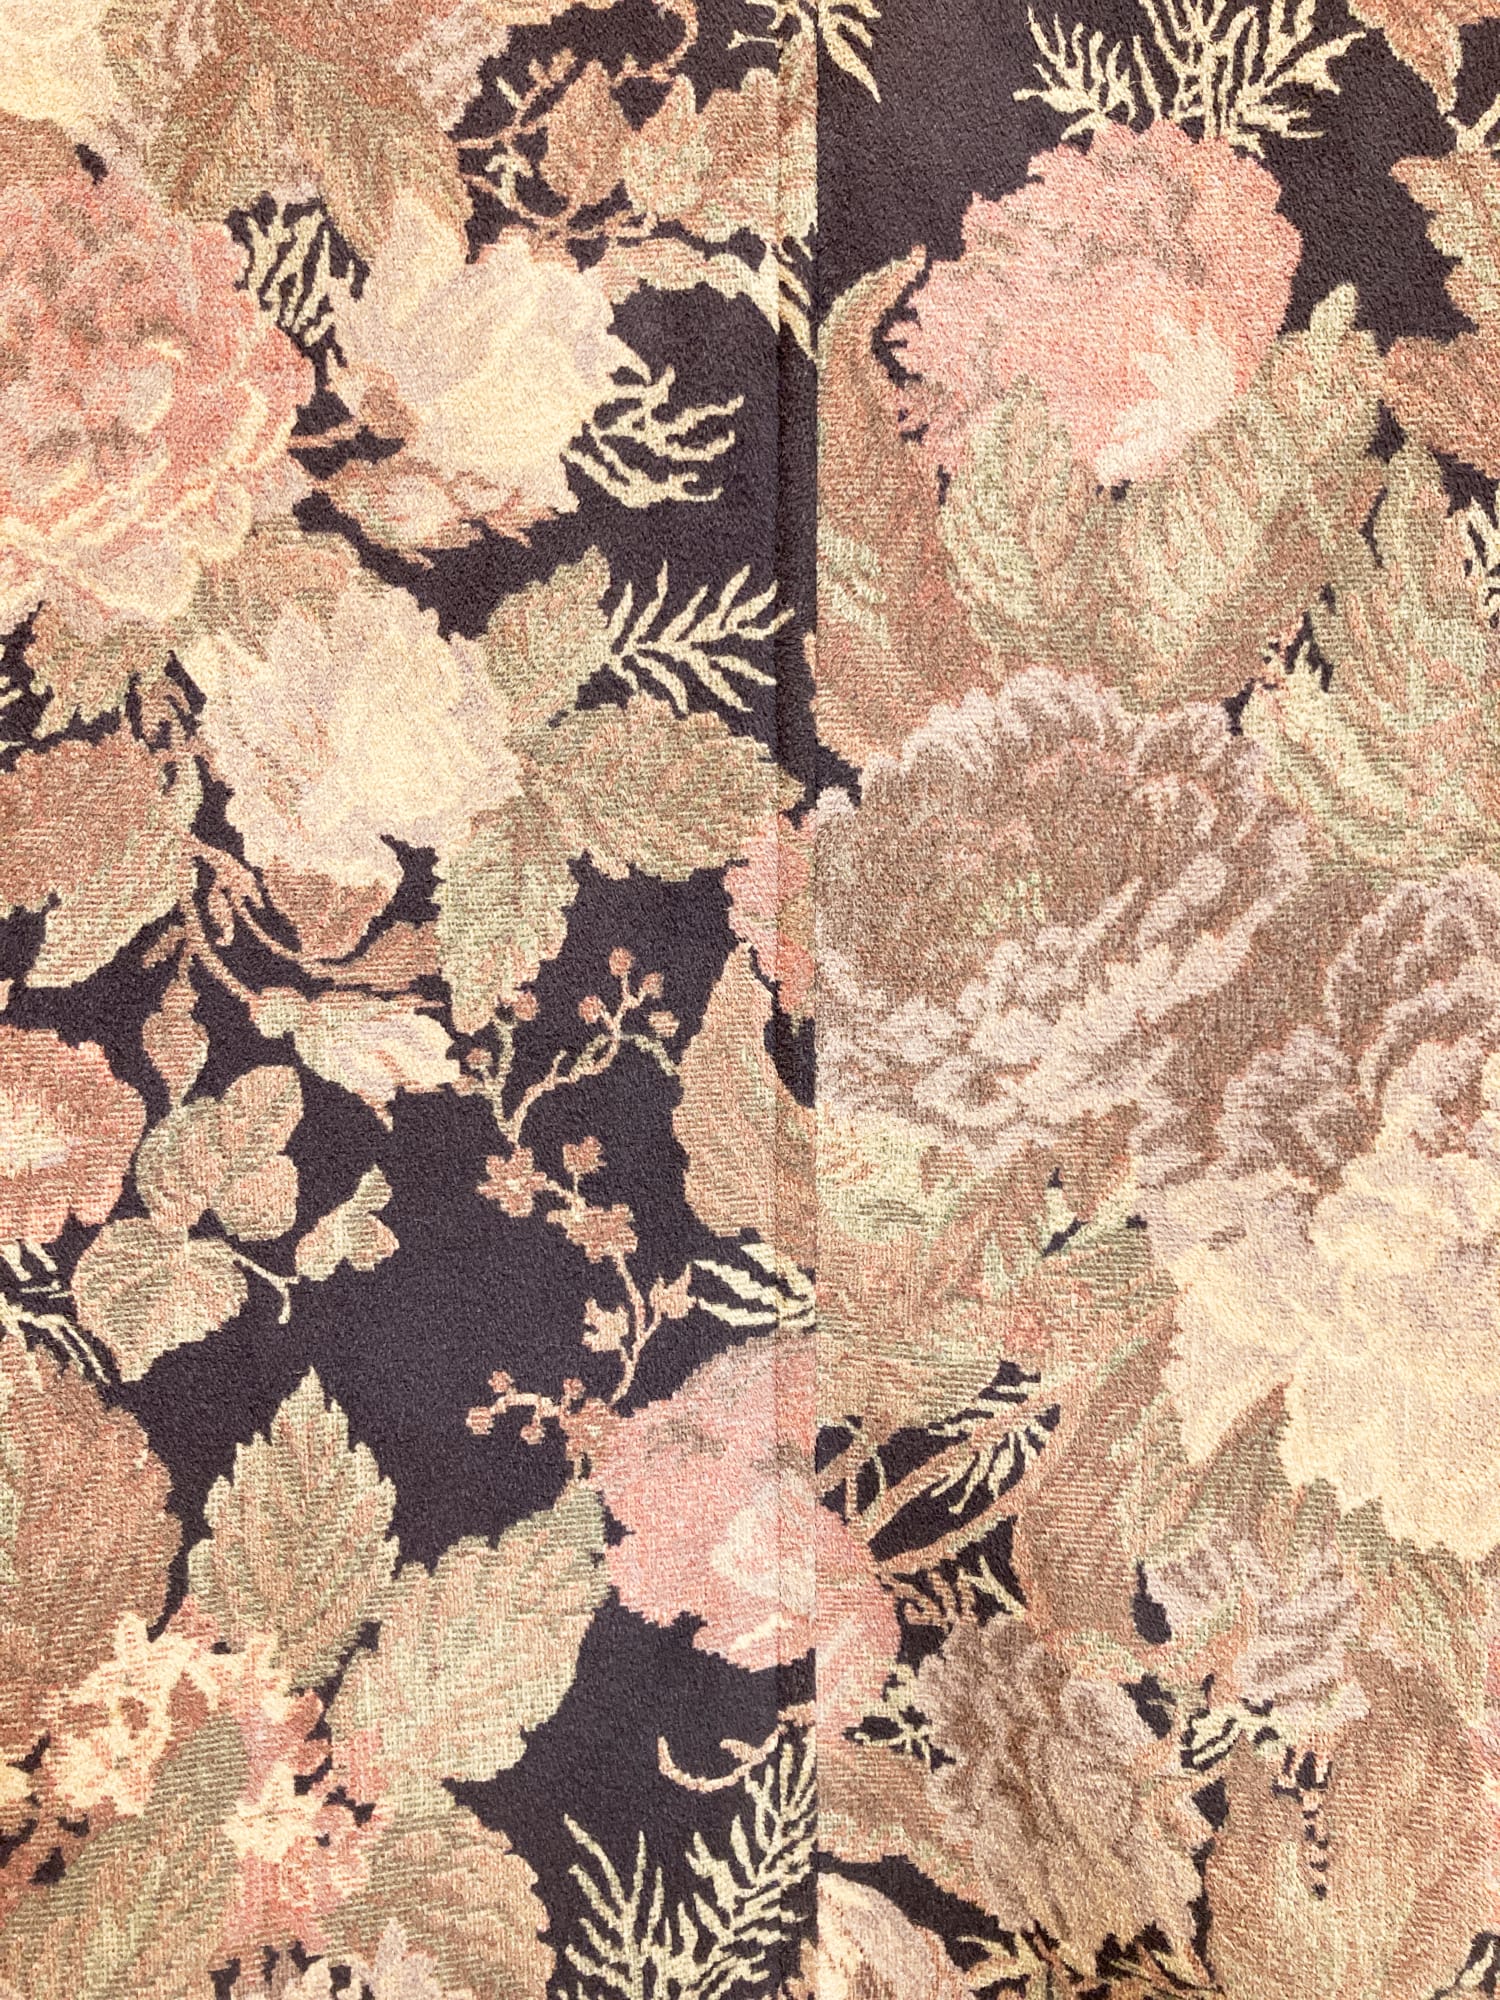 Yoichi Nagasawa 1990s gobelin floral pattern five button coat - size 38 S